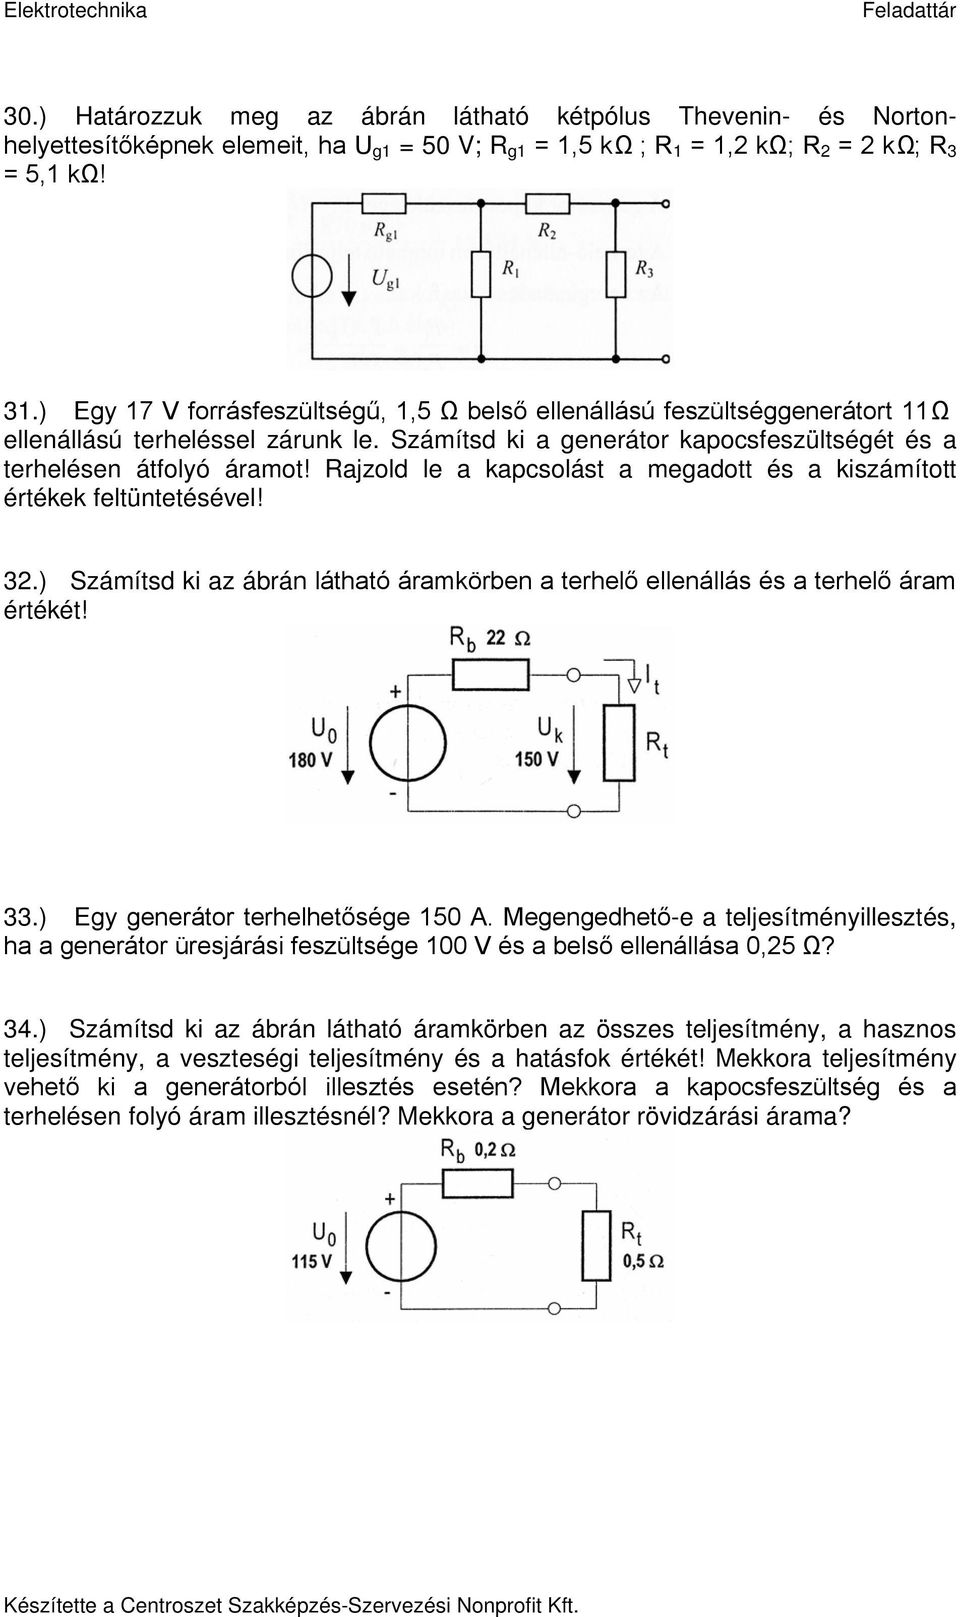 Elektrotechnika Feladattár - PDF Ingyenes letöltés